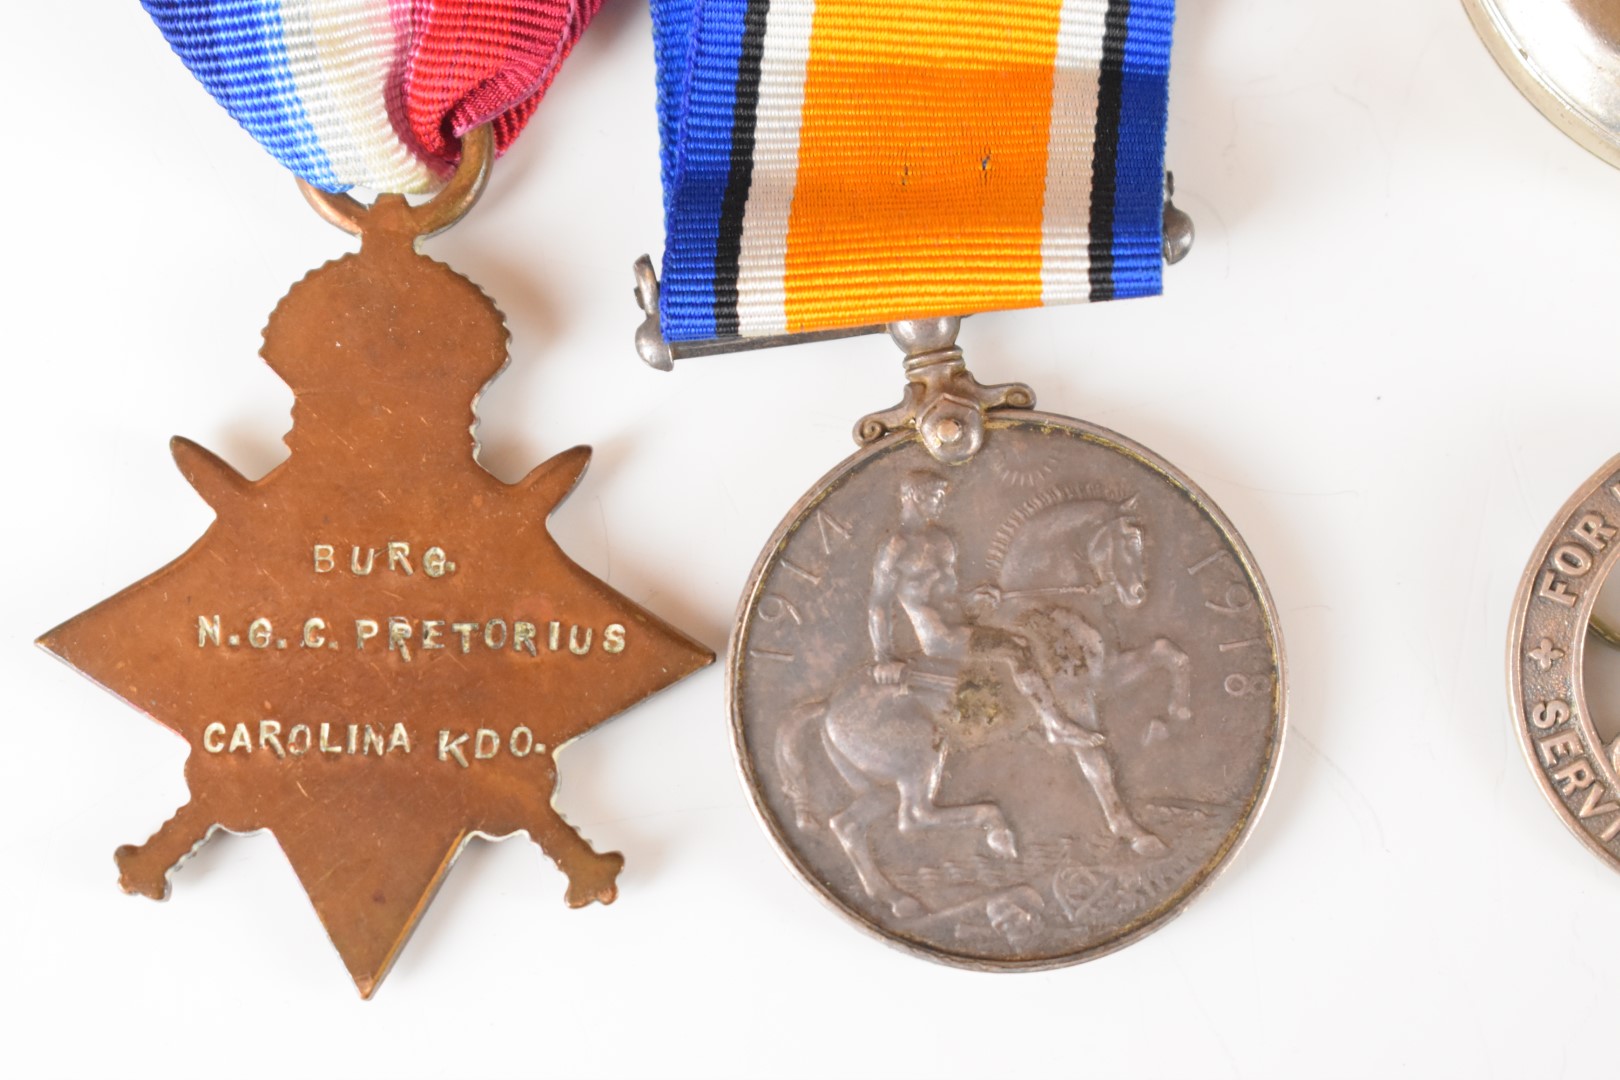 South Africa WW1 1914/1915 Star named to Burger N G C Pretorius, Carolina Kommando, WW1 War Medal - Image 8 of 8